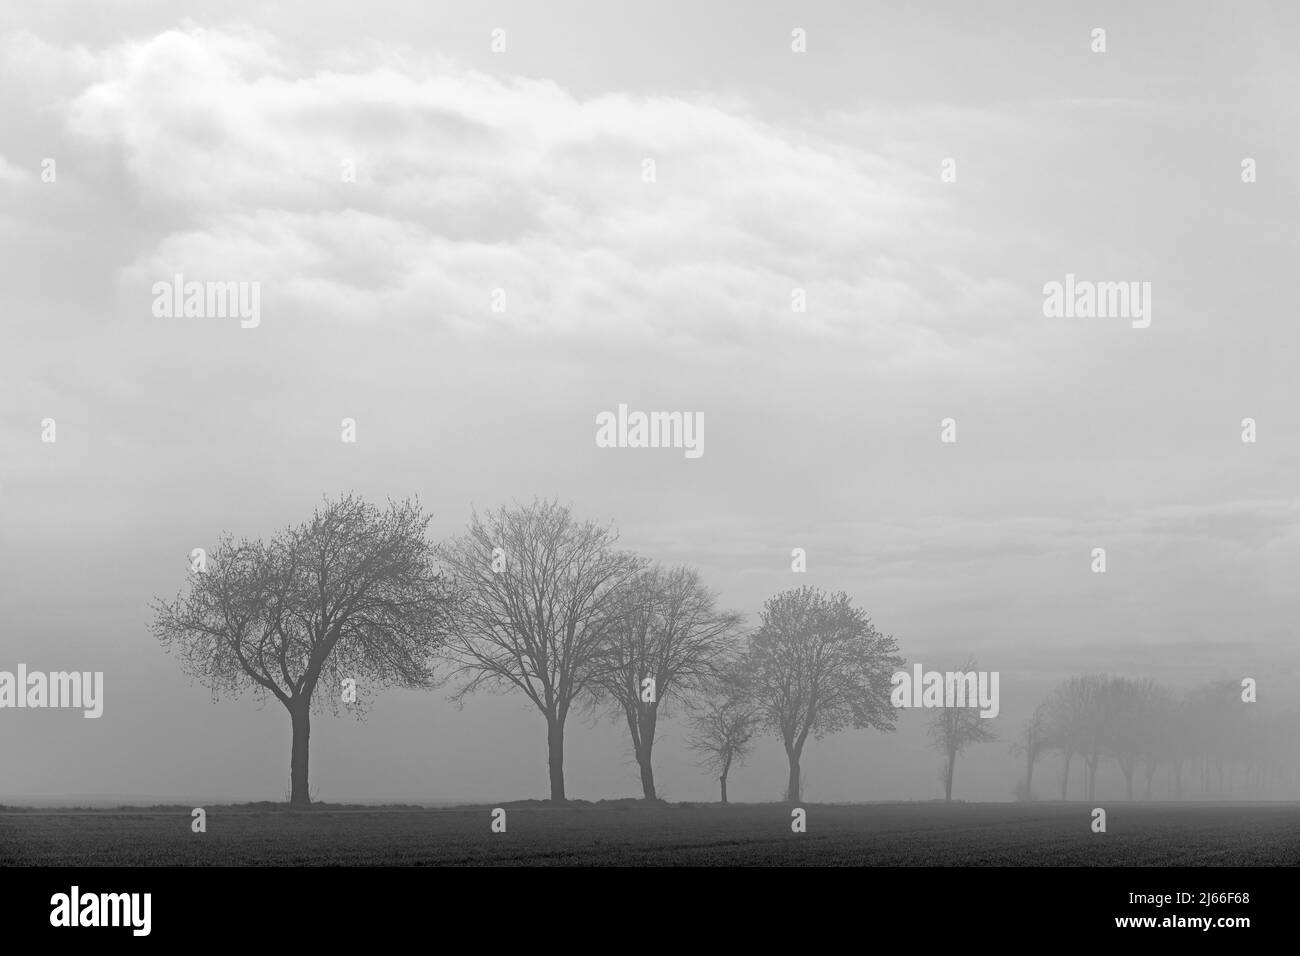 Laubbaueume, Baumreihe im Nebel, schwarzweiss, Nordrhein-Westfalen, Allemagne Banque D'Images